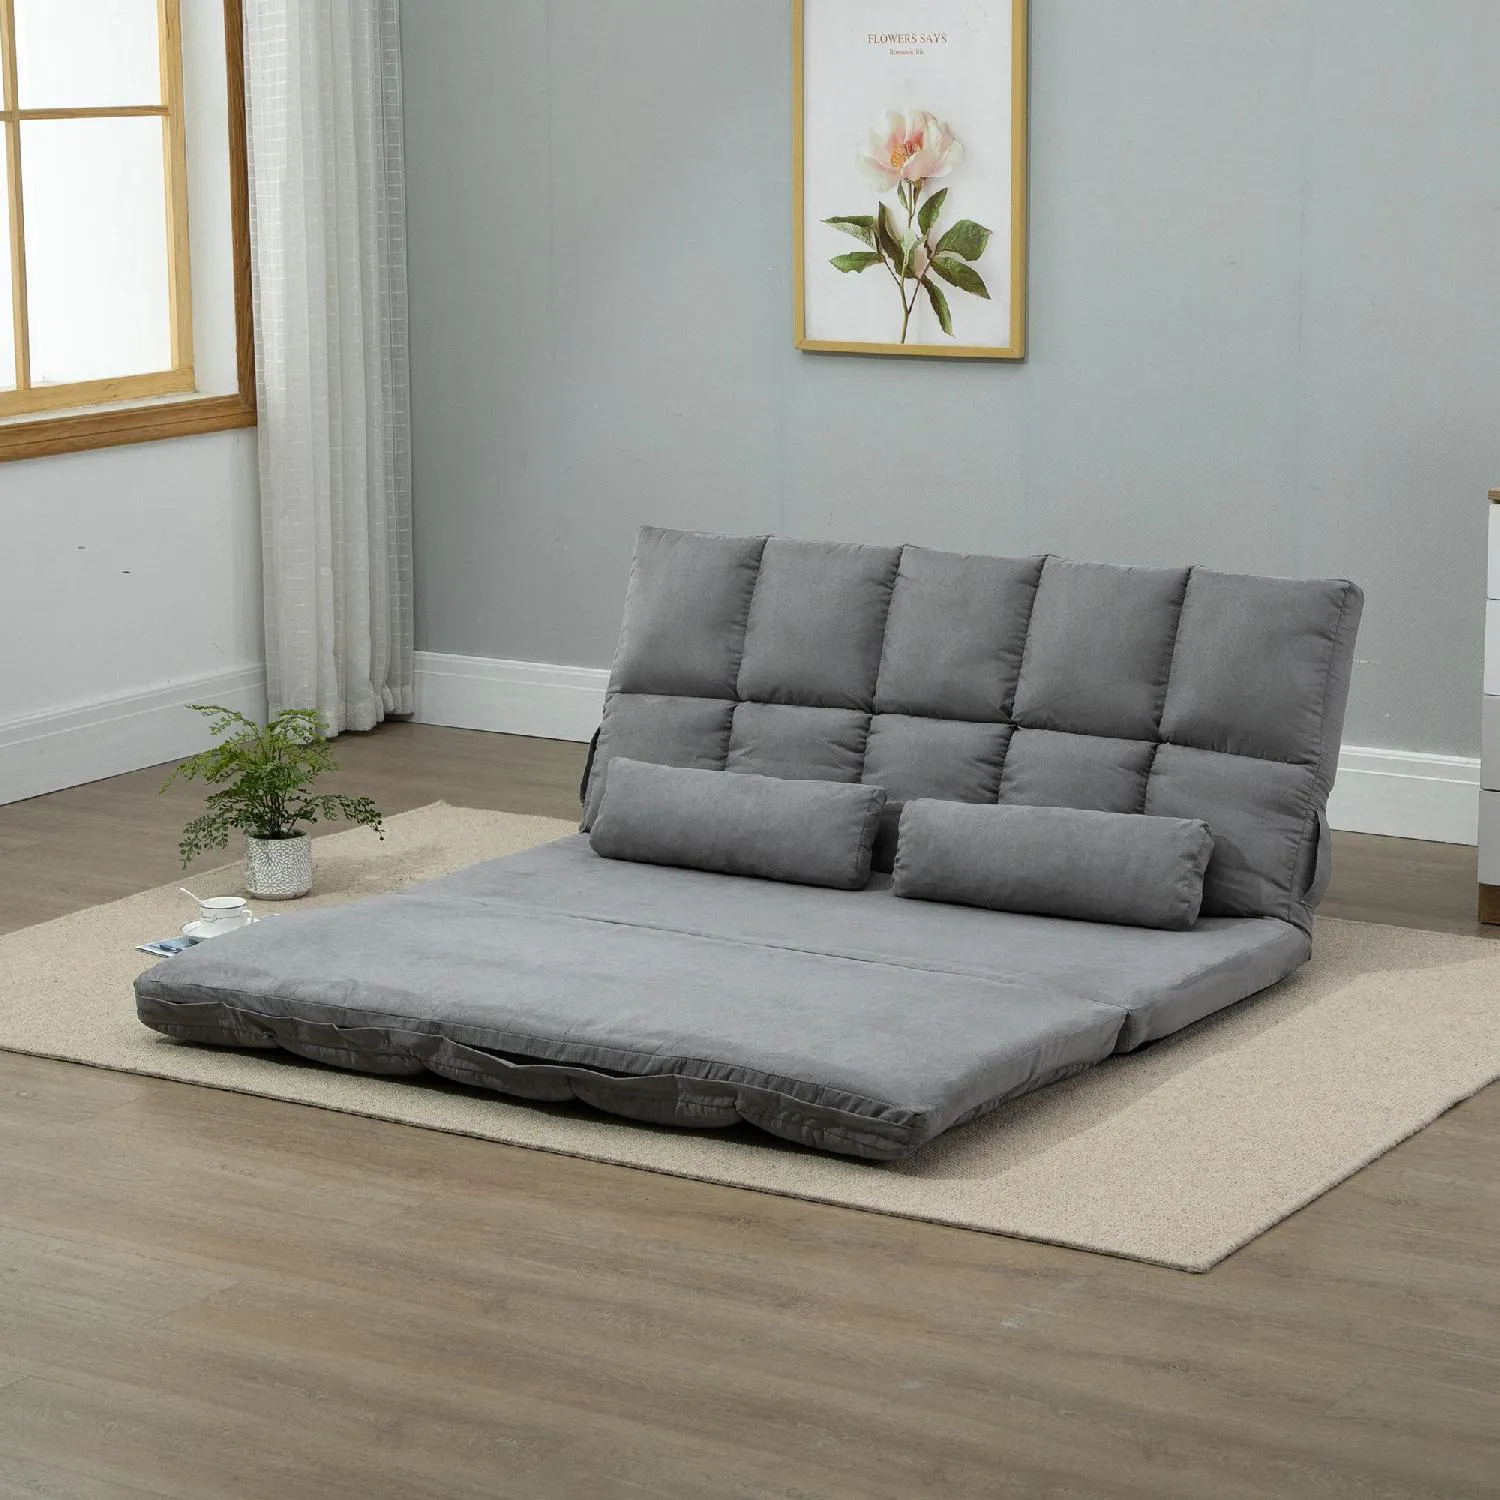 Rete pieghevole da incasso per divano letto - Arredamento e